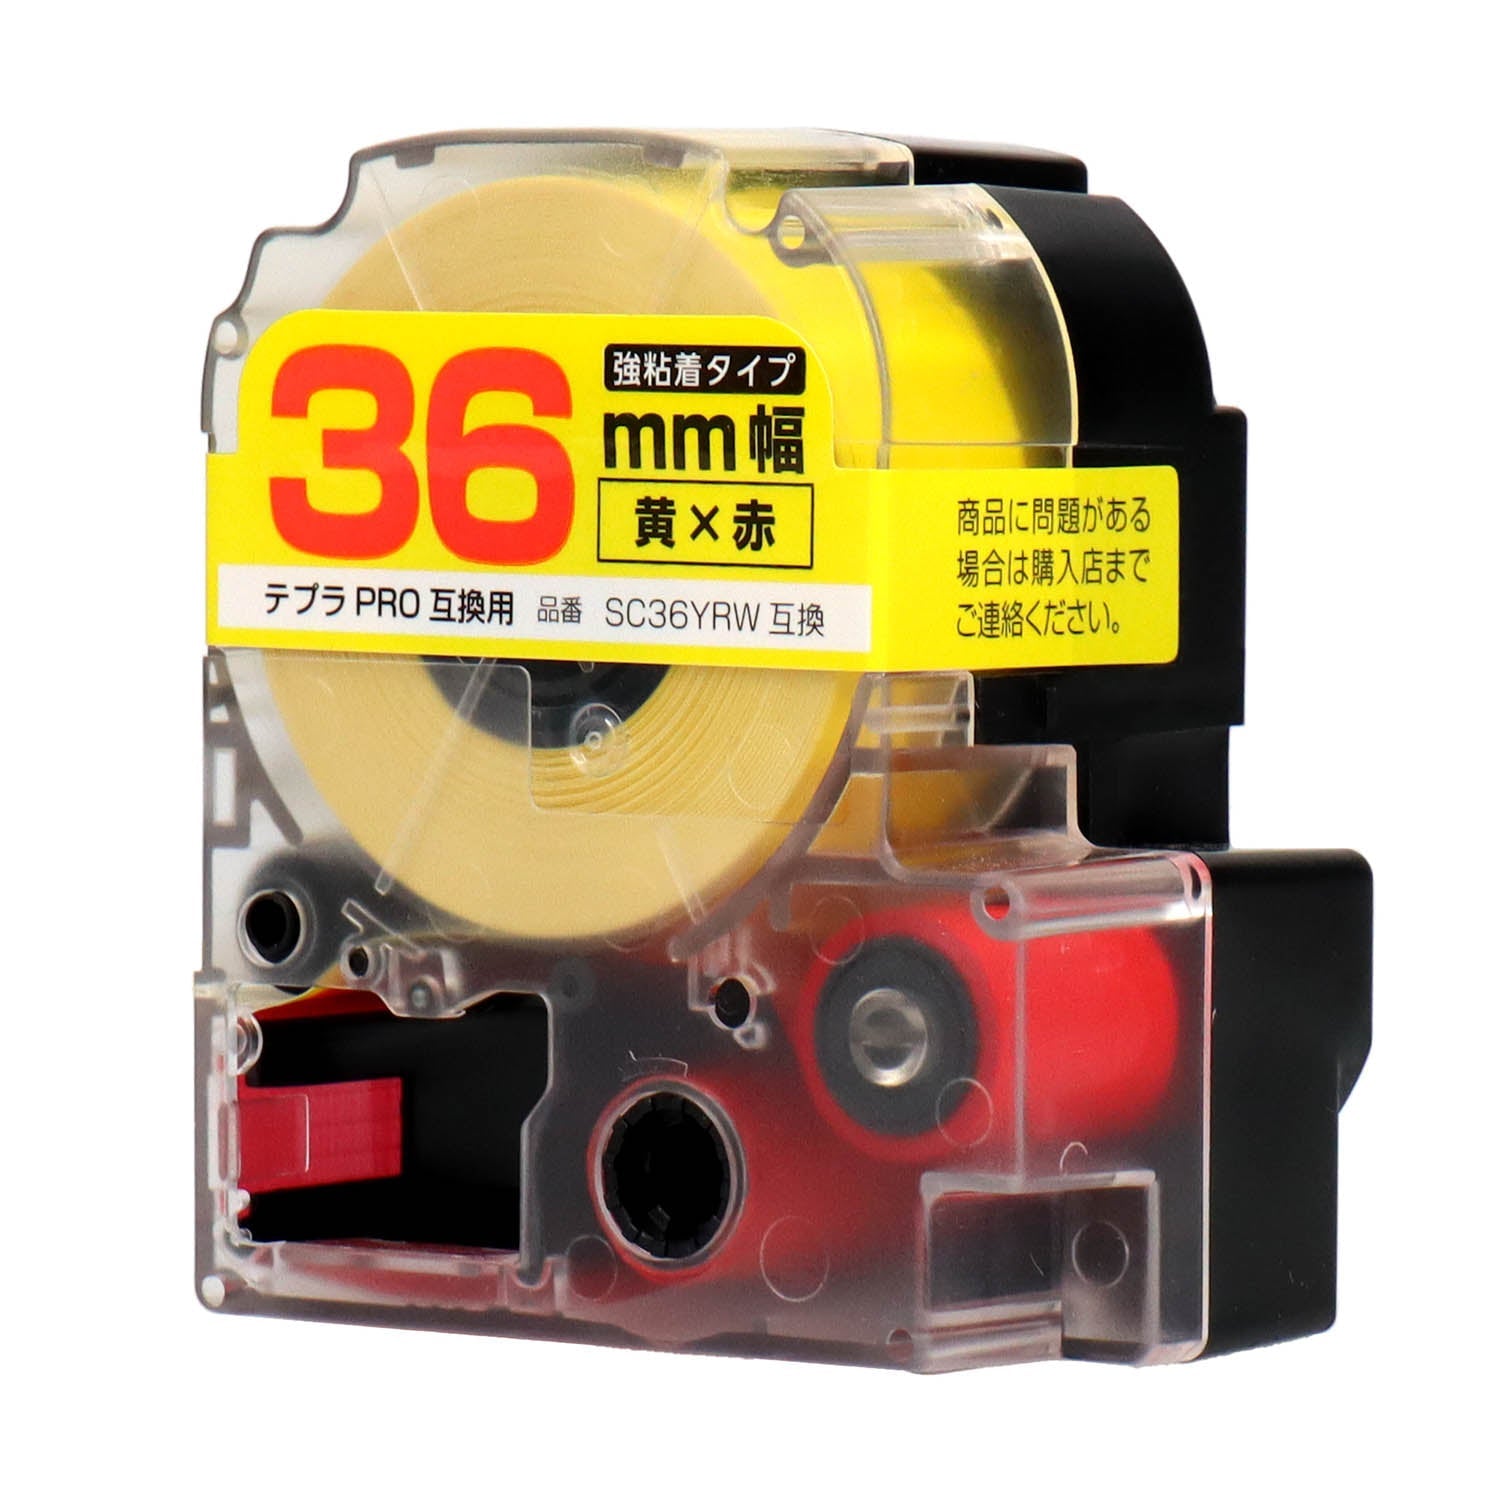 テプラPRO用互換テープカートリッジ 黄×赤文字 36mm